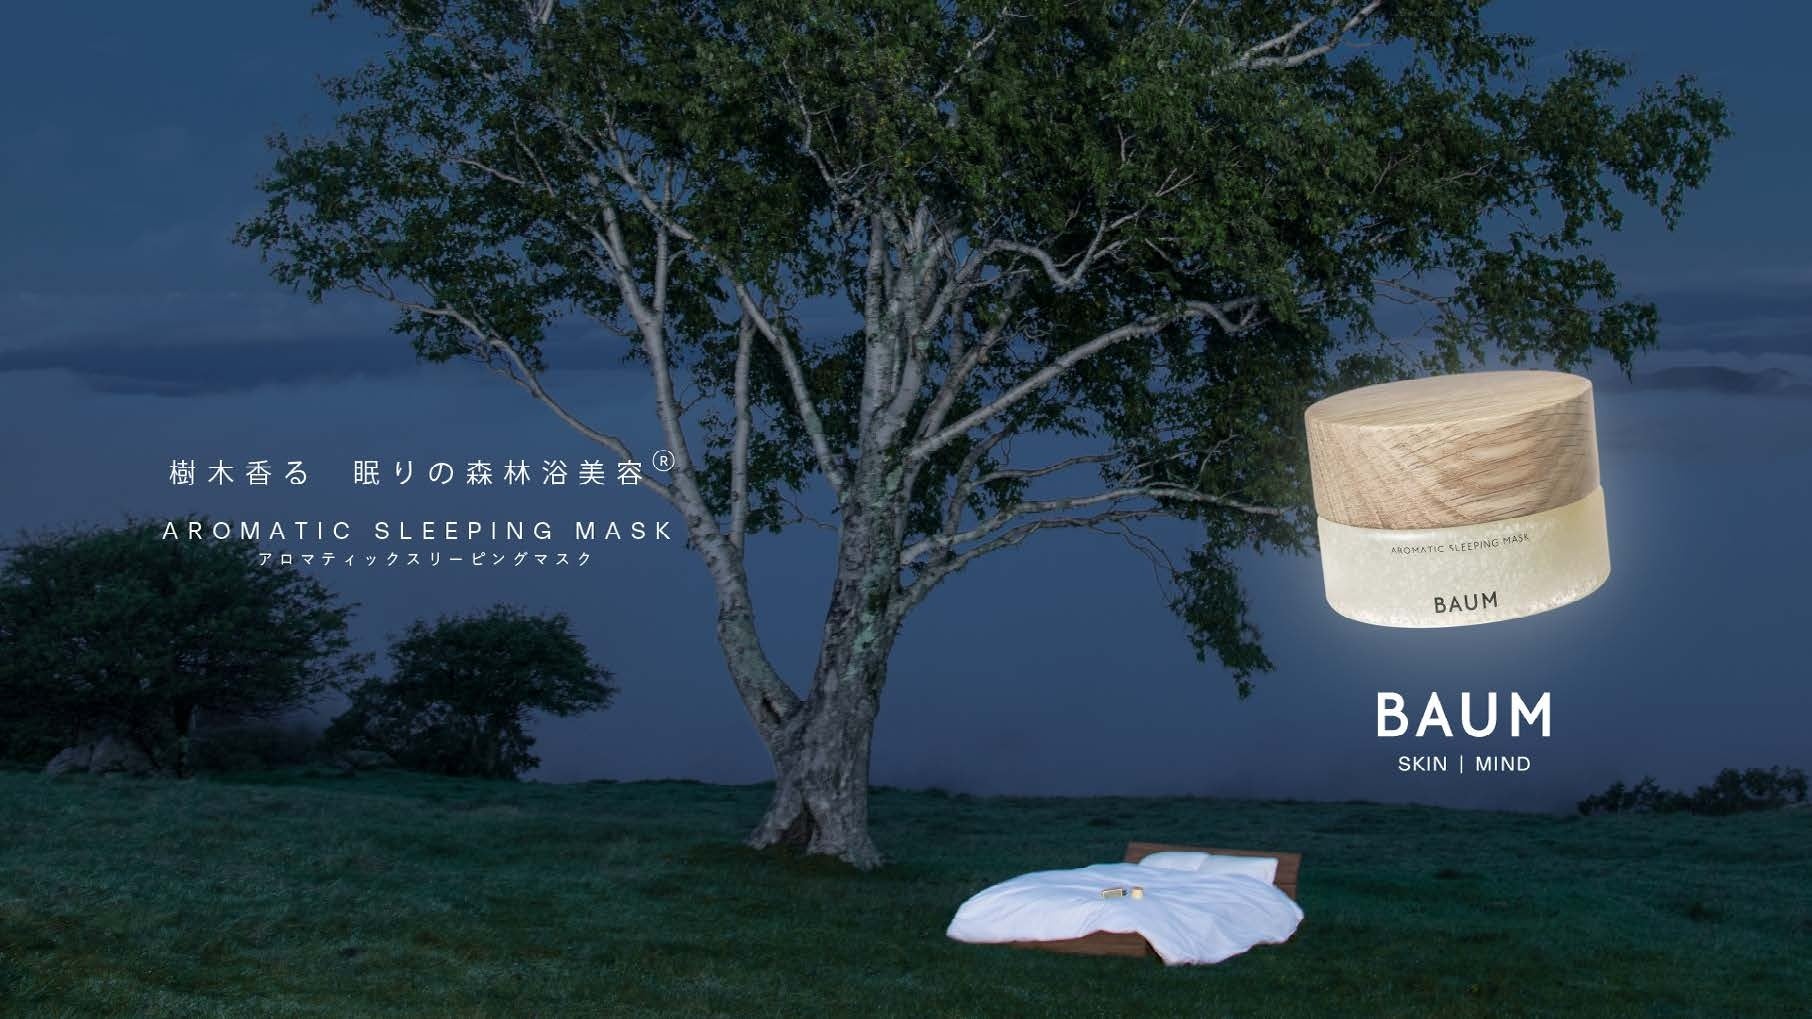 BAUMより「アロマティック スリーピングマスク」が登場。樹木香る、眠りの森林浴美容®︎。